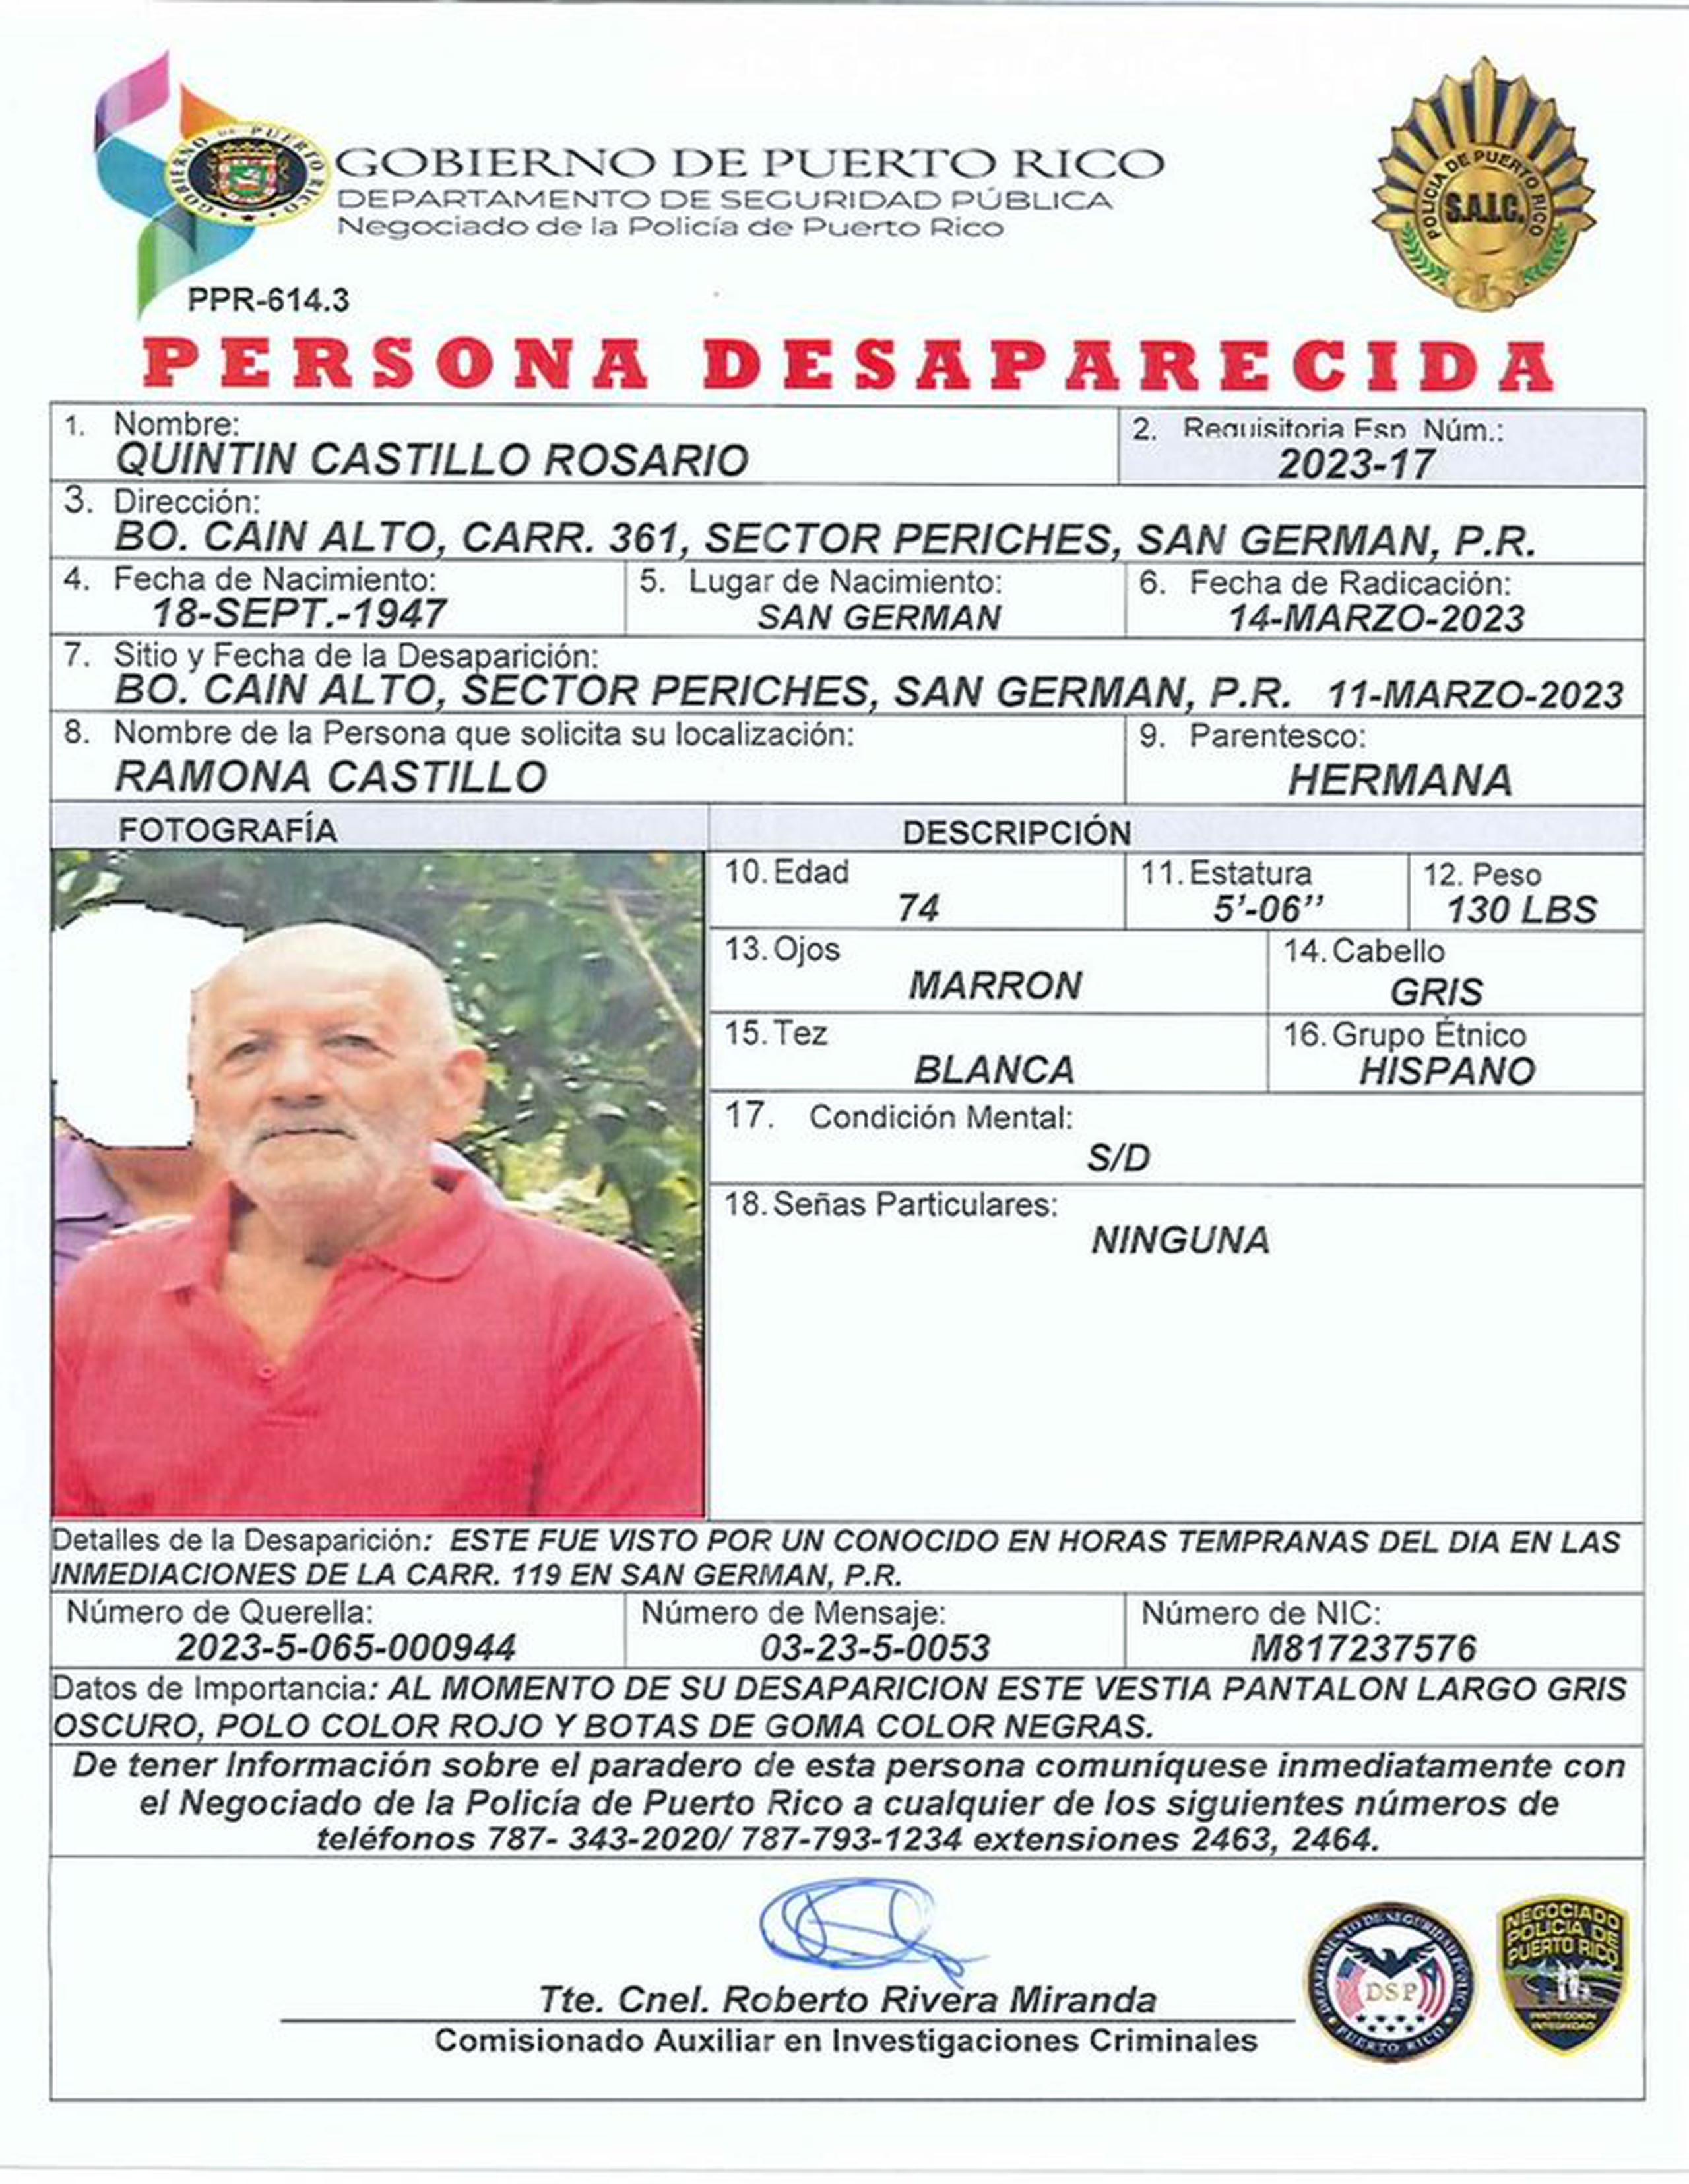 Quintín Castillo Rosario de 74 años, fue visto por última vez el sábado pasado, por la mañana en carretera PR-119 en San Germán.